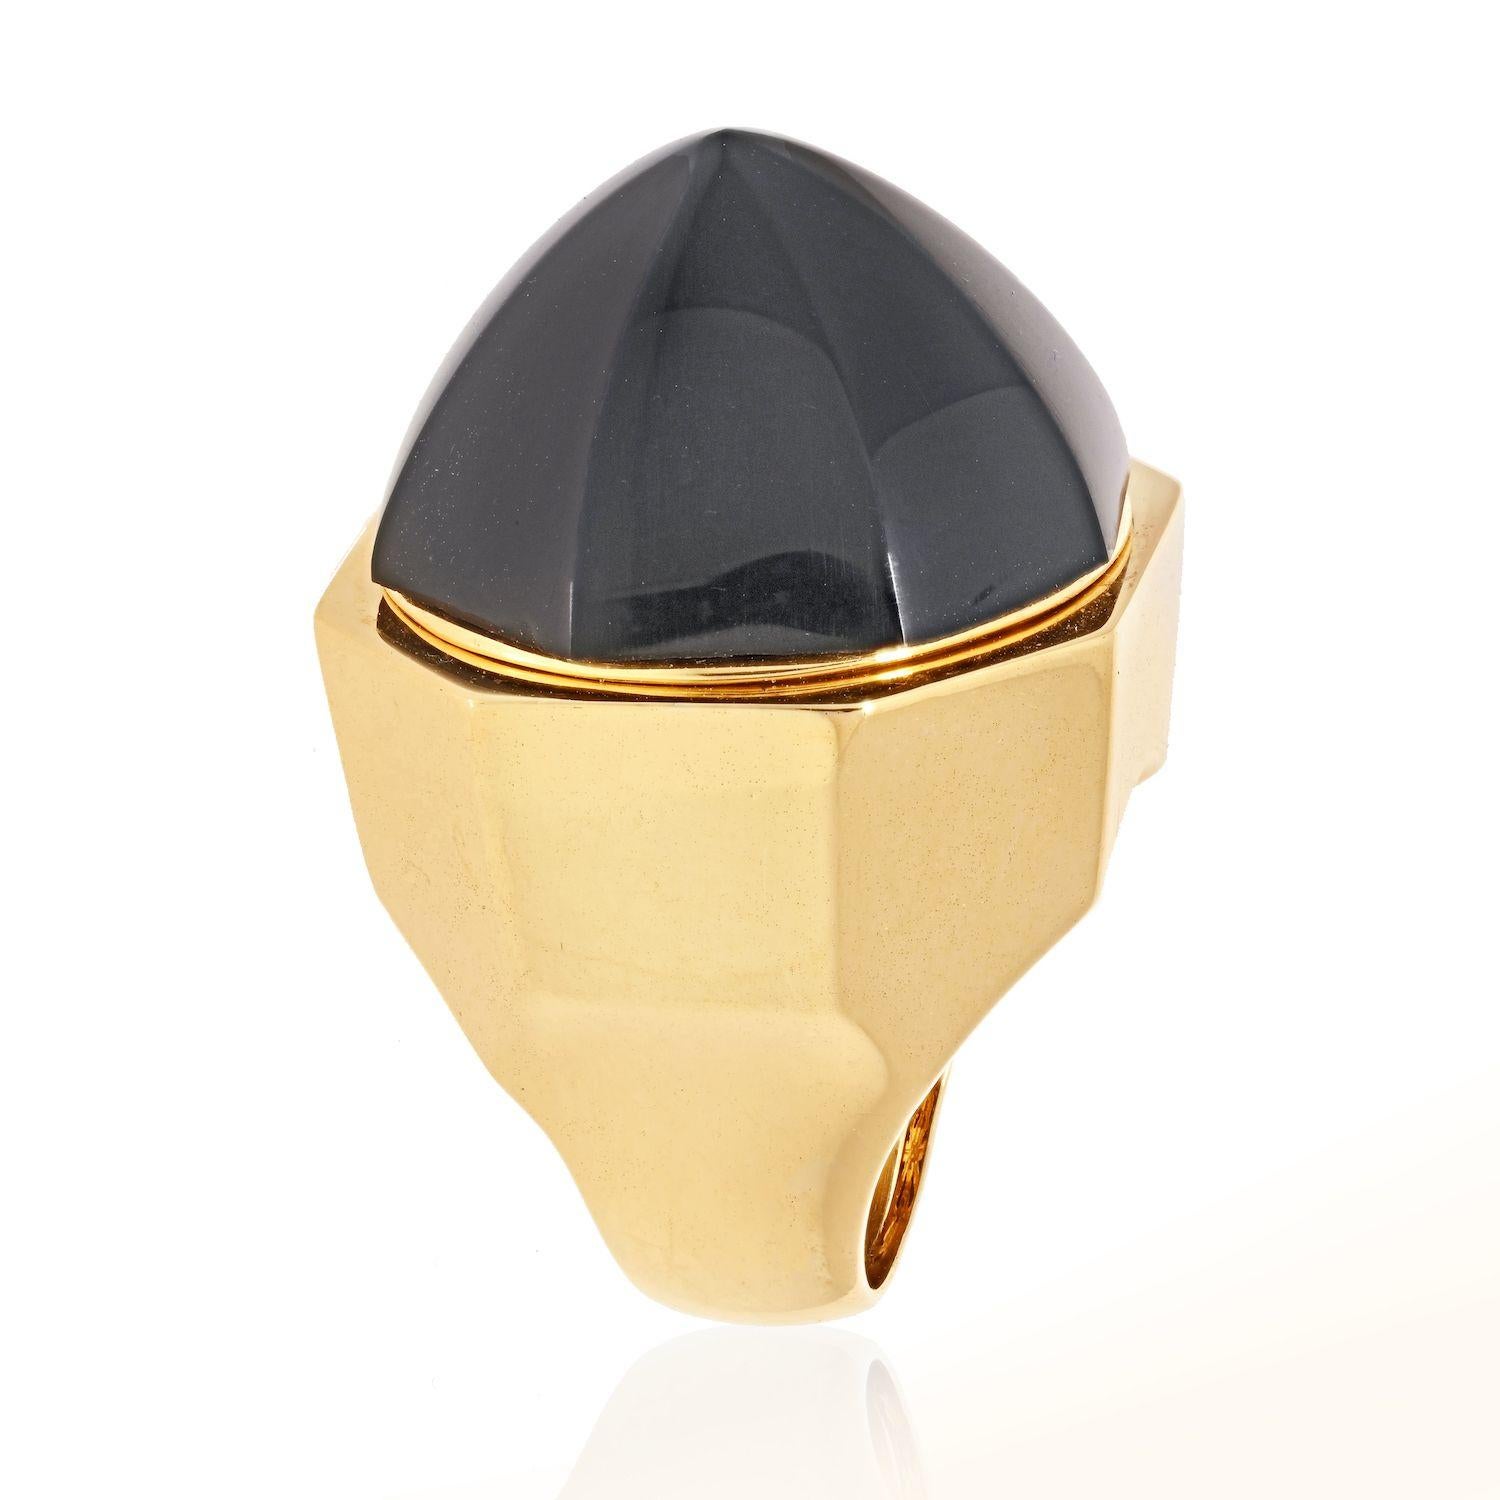 Bague dôme surdimensionnée en onyx noir par David Webb. Fabriqué en or jaune 18K. 
Diamètre de l'anneau : 26 mm
Se place haut sur le doigt : 24 mm
Taille 6 